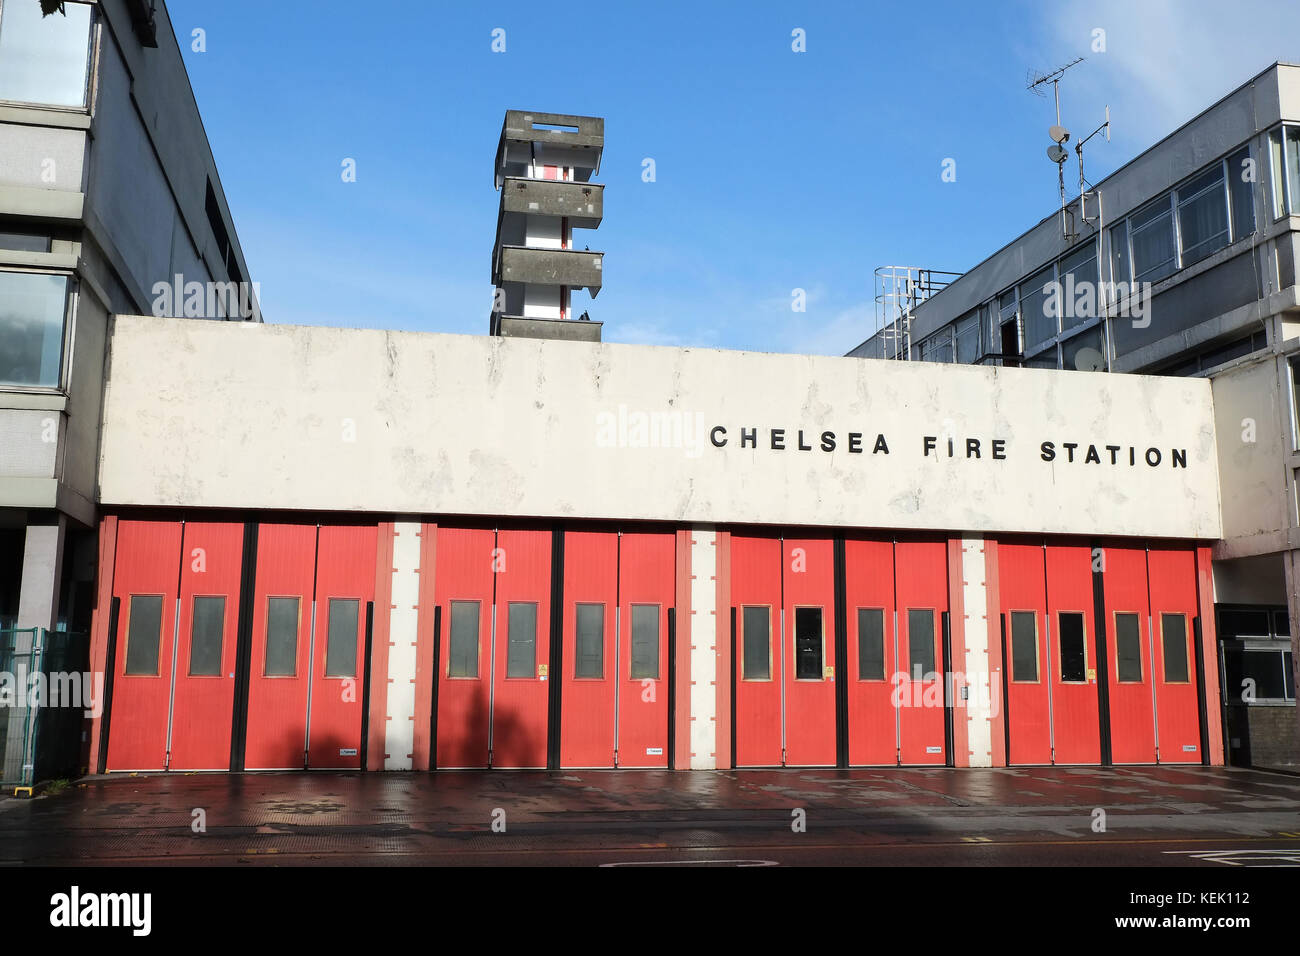 Chelsea Fire Station 264 Kings Road Londres. La station a été ouverte le 3 mars 1965 la chanteuse Adele a montré son soutien aux pompiers en visite Banque D'Images